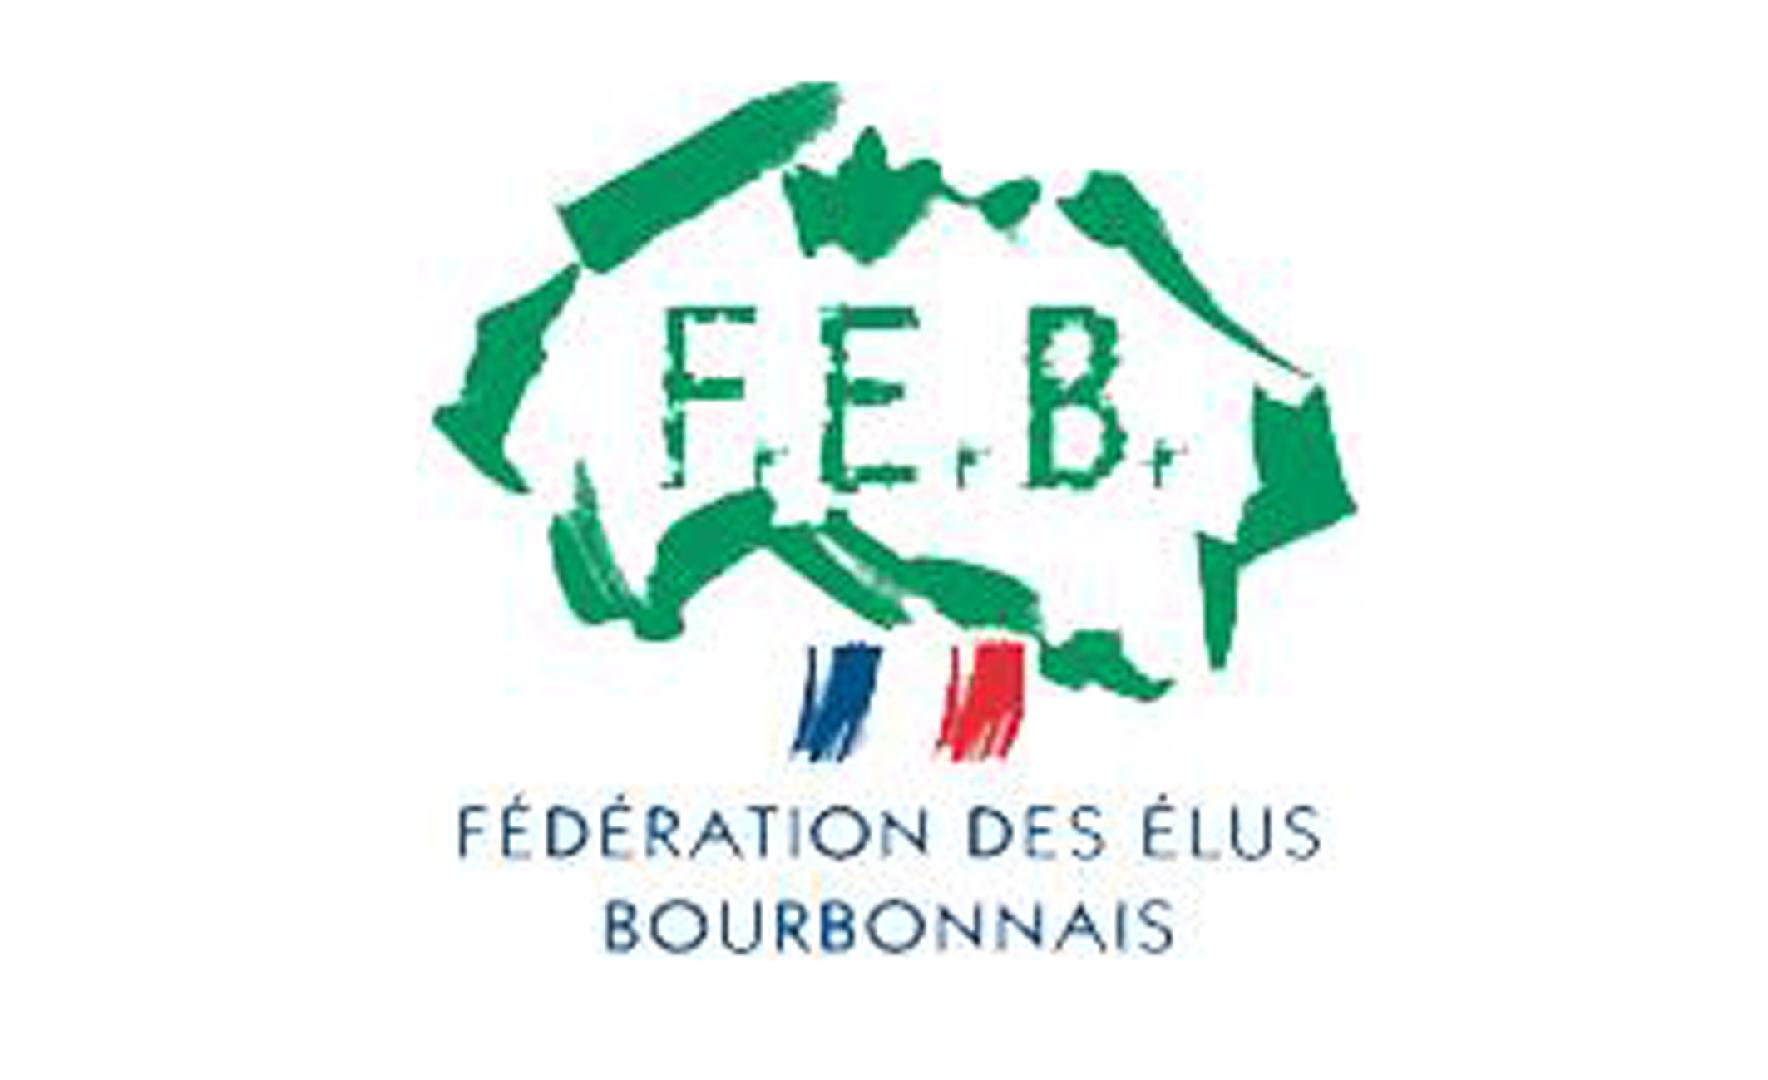 Fédération des élus du Bourbonnais (FEB)